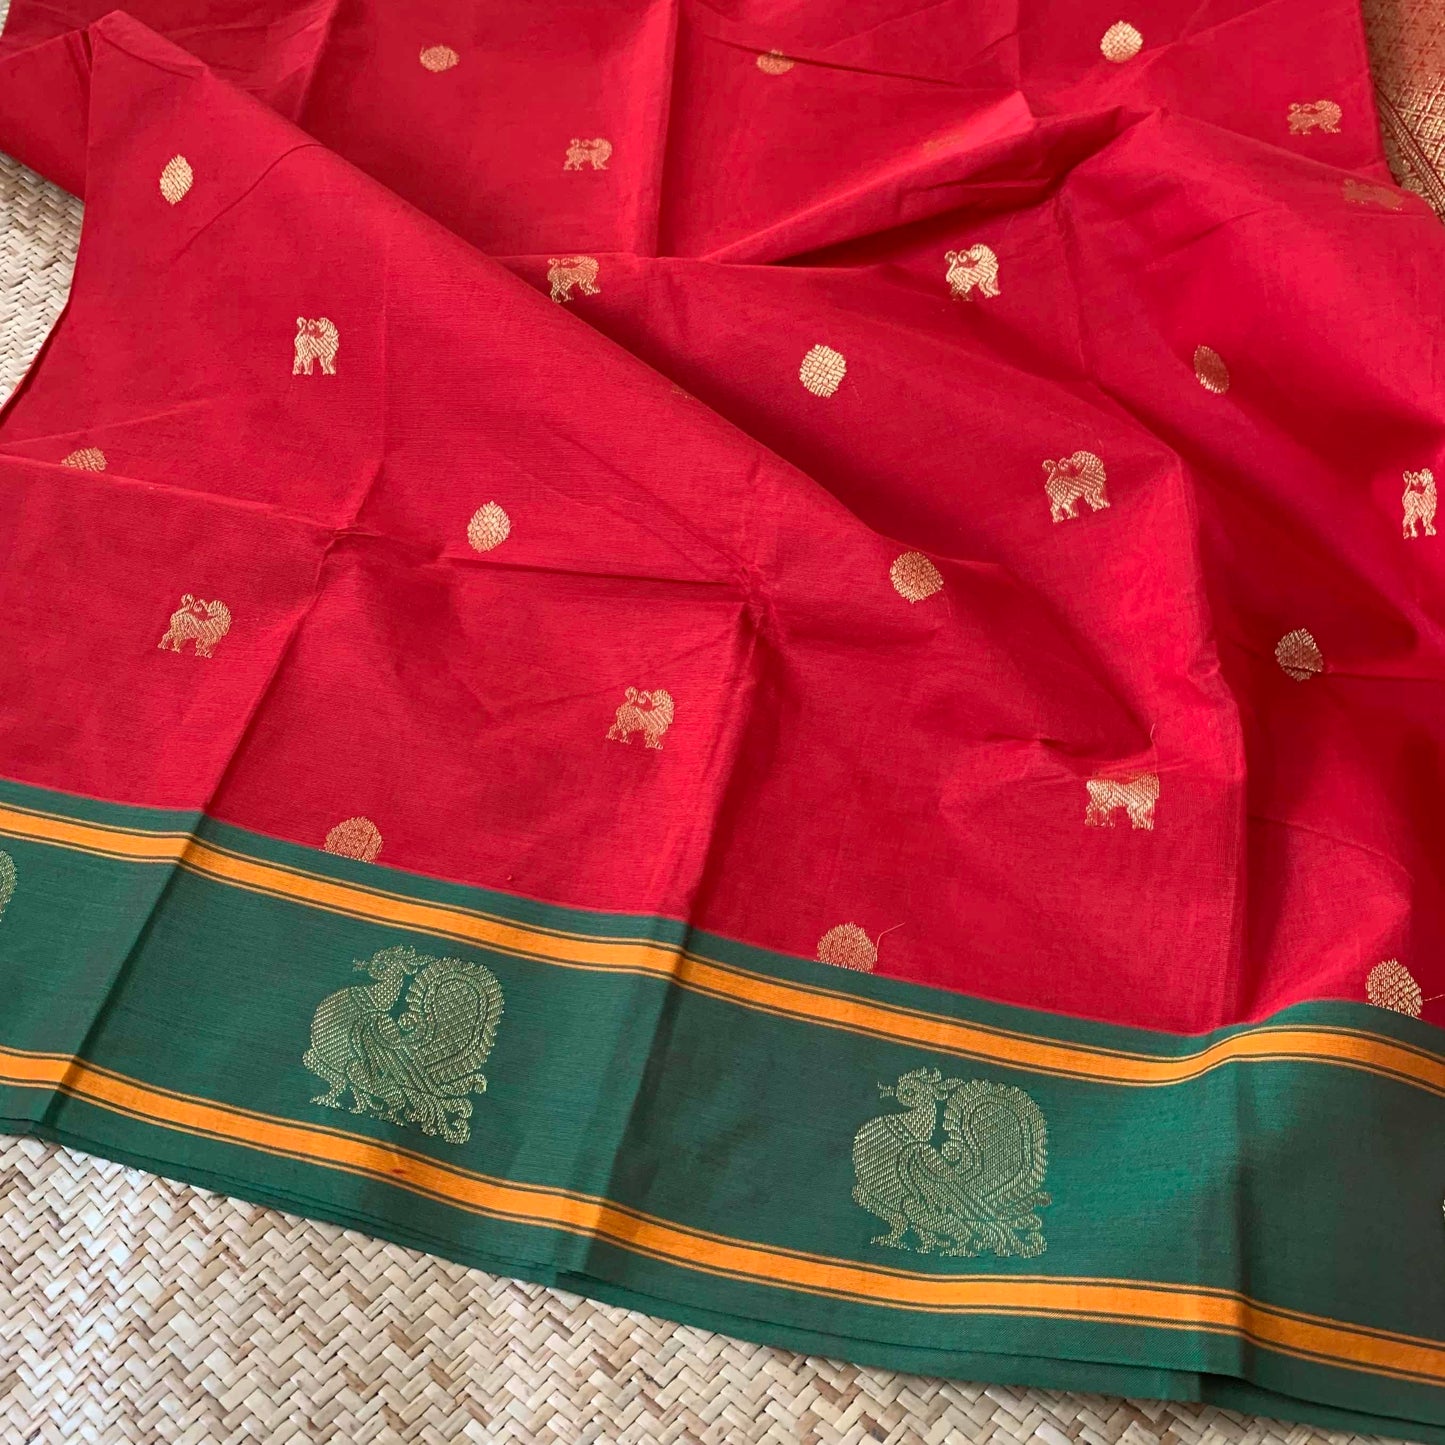 Kanchipuram Cotton Saree, Red Saree With Green Border with Grand Pallu and Yazhi Chakkaram Butta